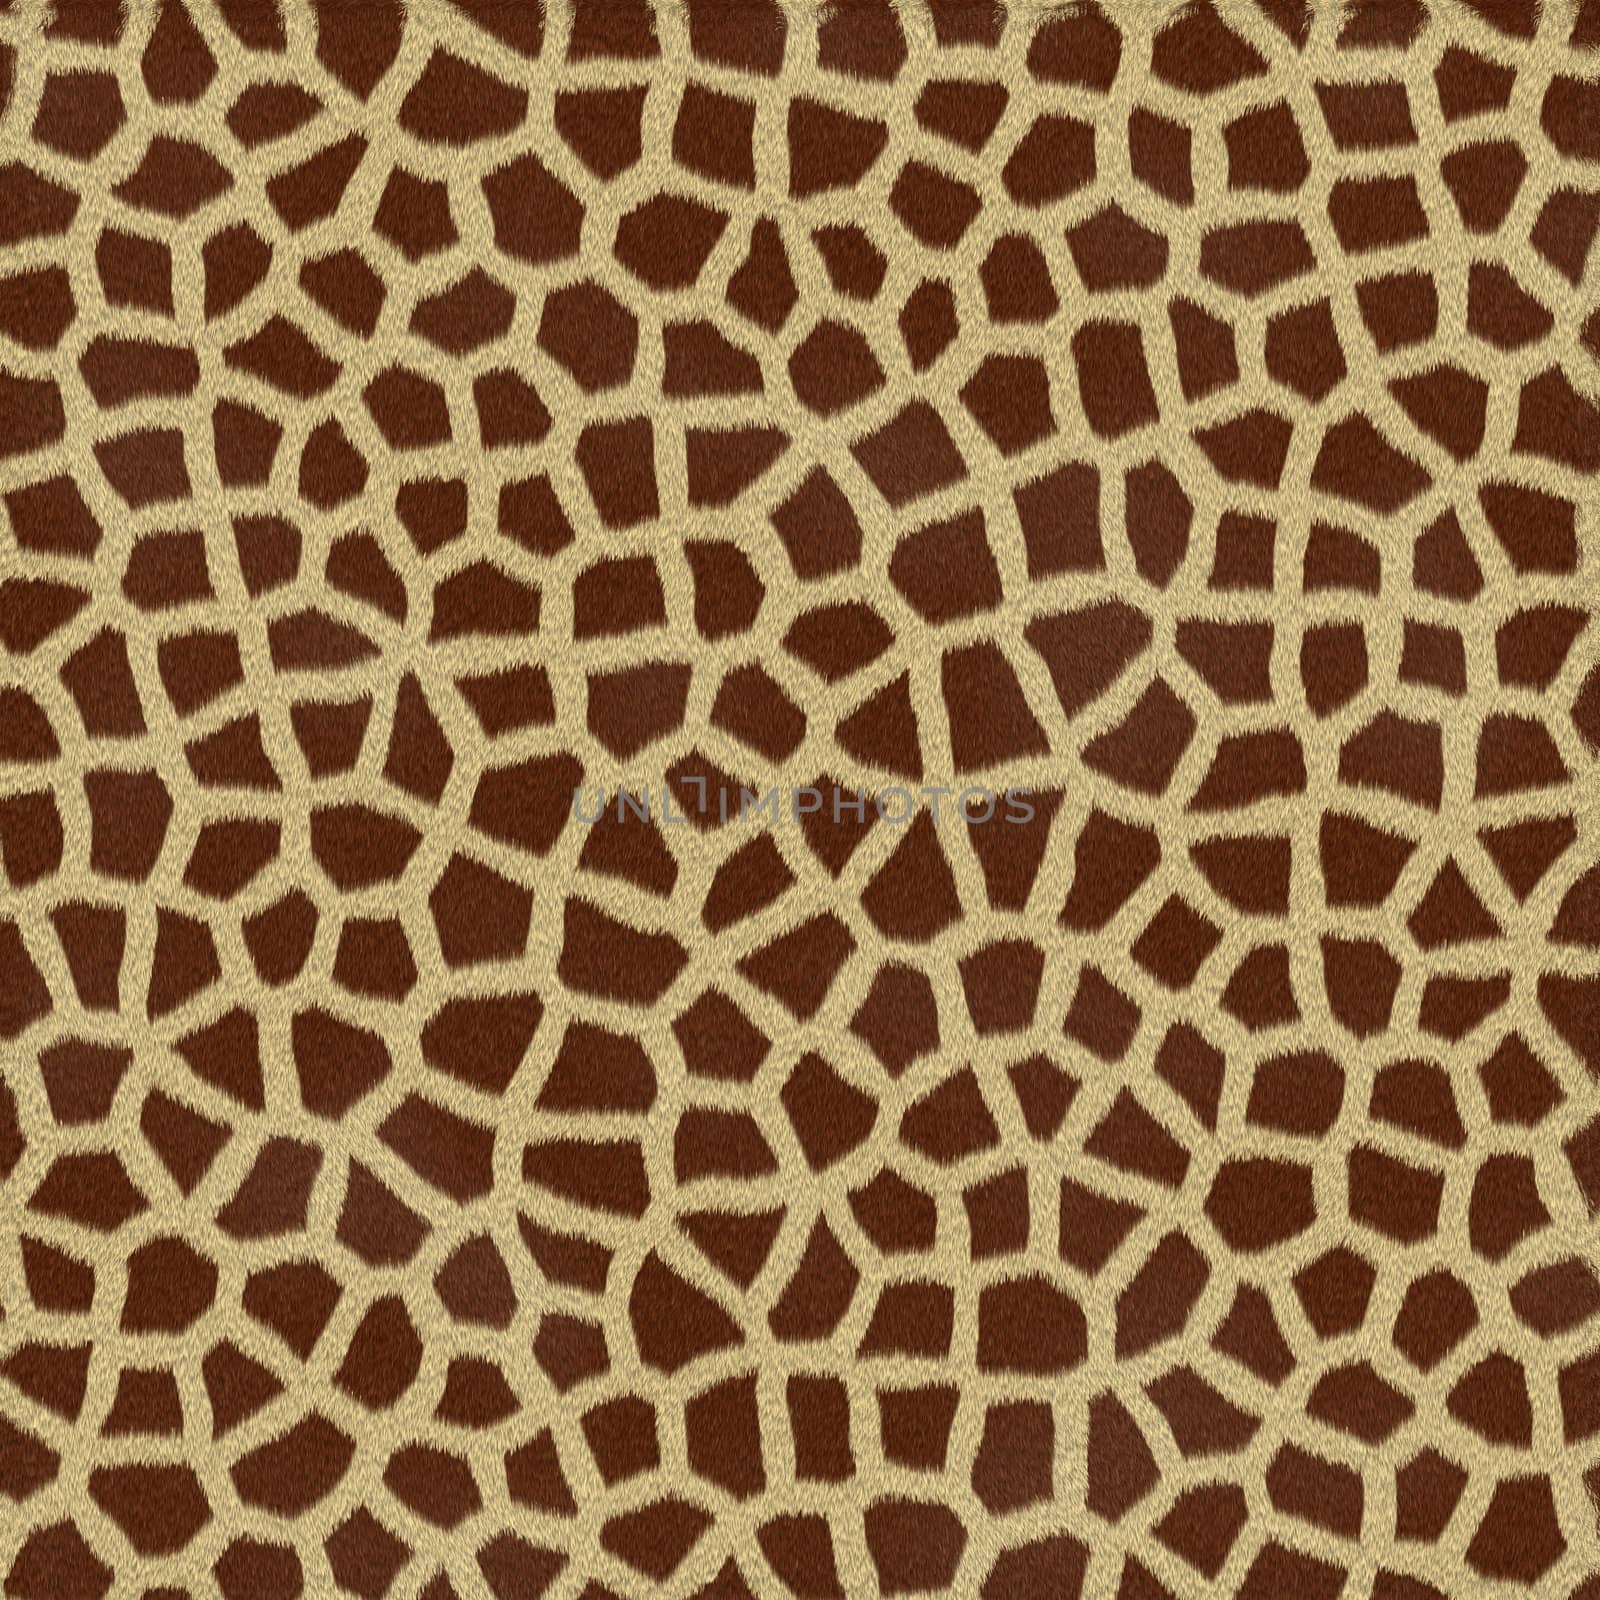 giraffe spots by clearviewstock